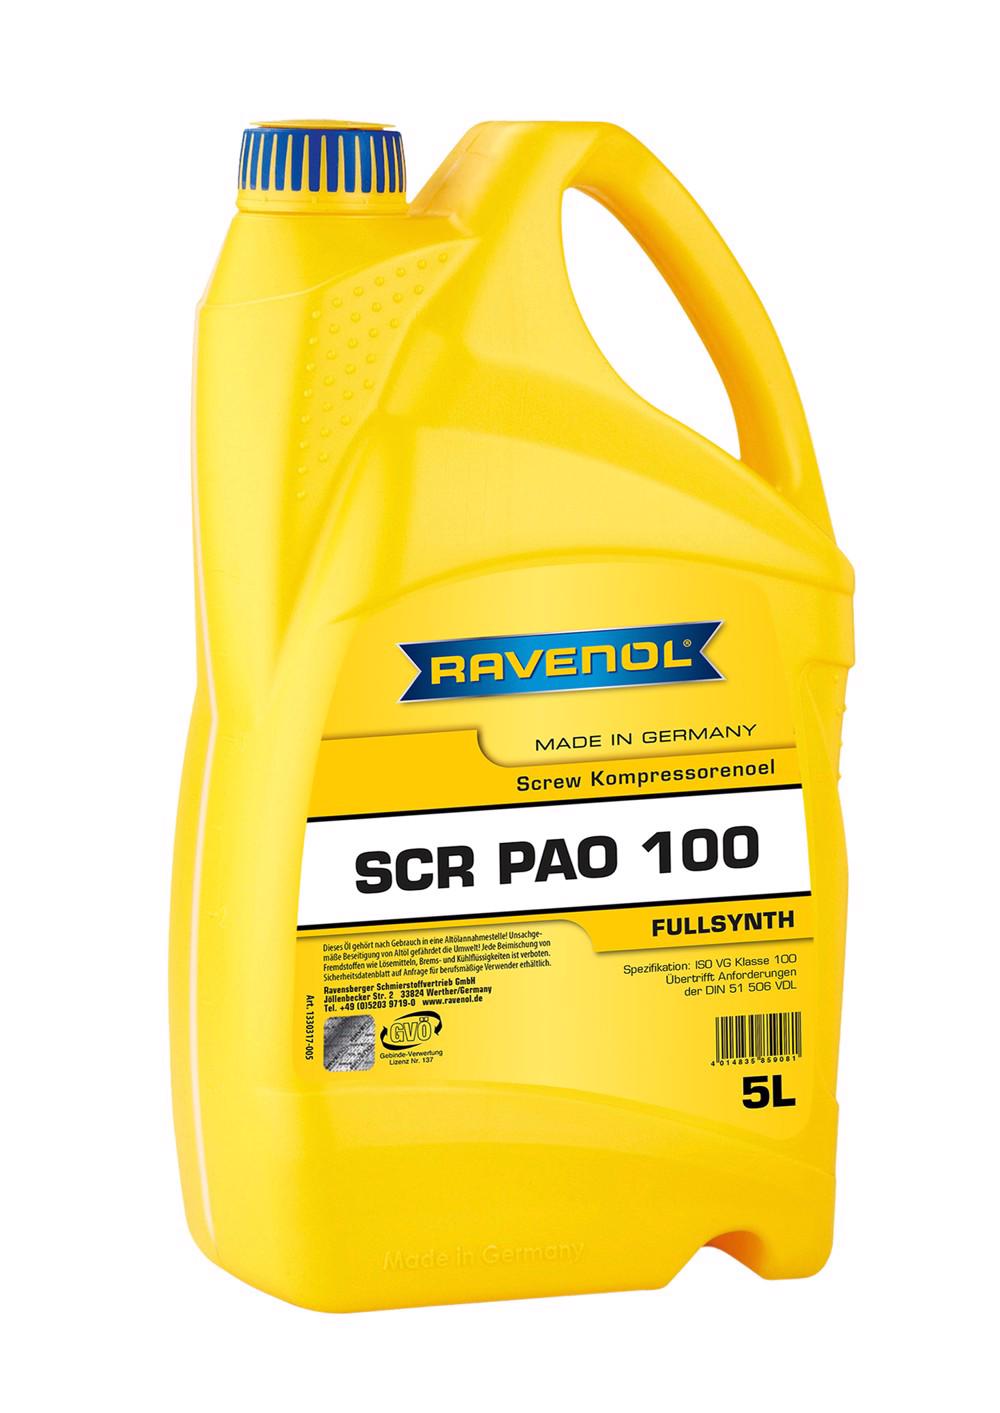 RAVENOL SCR PAO 100 Screw Kompressorenoel  5 L